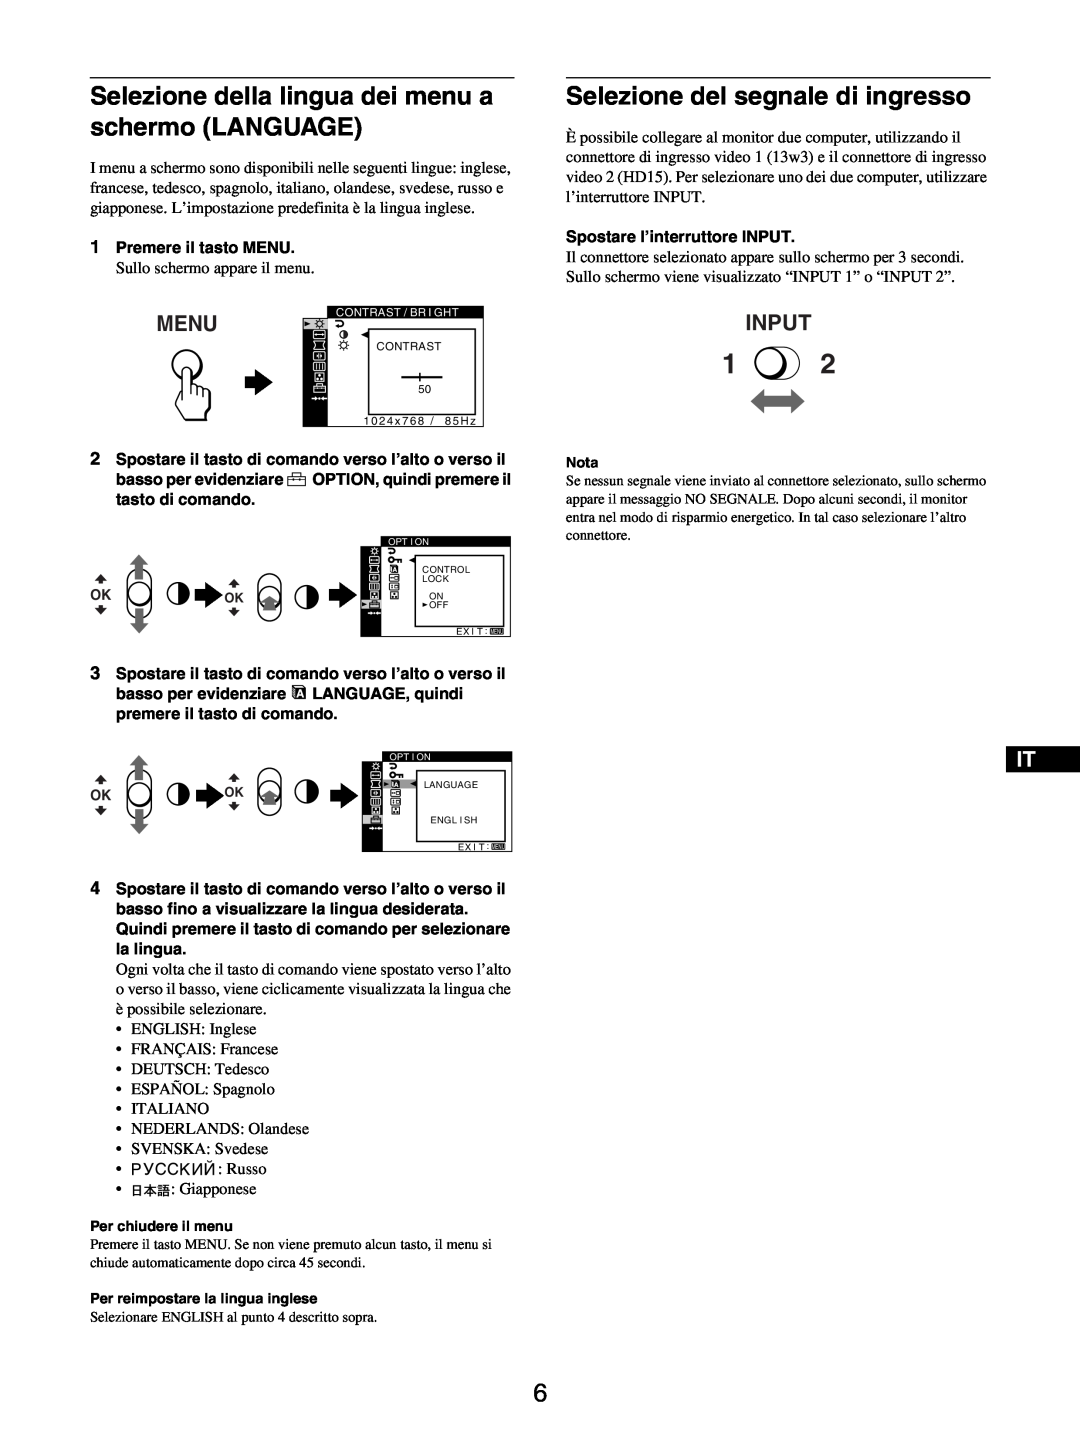 Sony GDM-5510 Selezione della lingua dei menu a schermo LANGUAGE, Selezione del segnale di ingresso, Menu, Input 